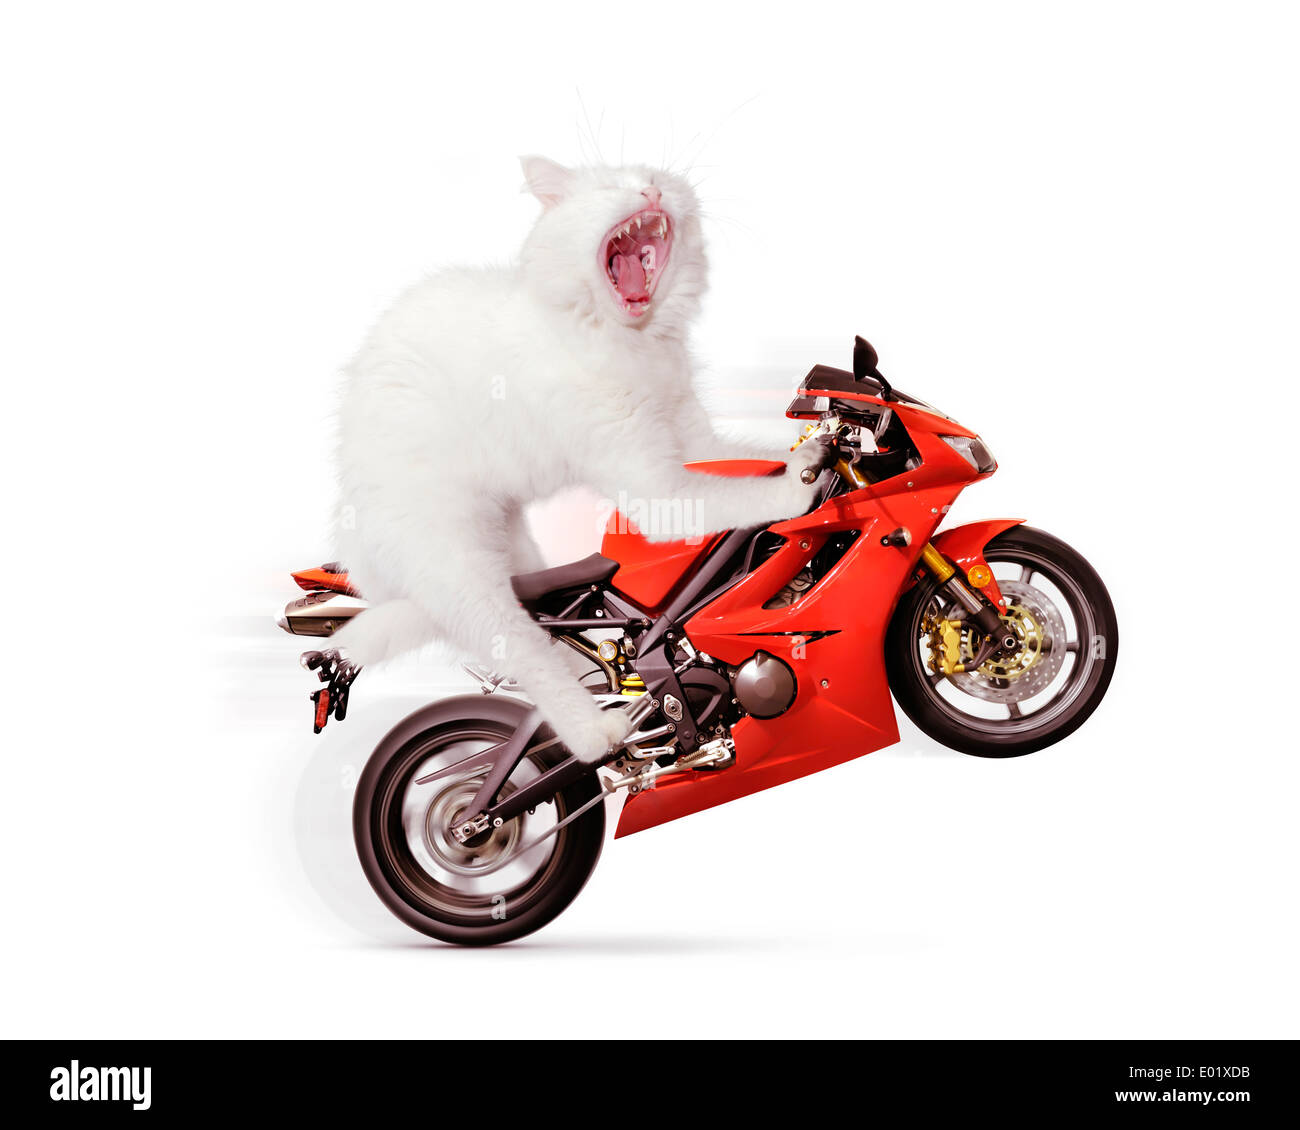 Licenza disponibile su MaximImages.com - concetto umoristico di un gatto bianco che fa una ruota su una moto sportiva rossa, isolato su sfondo bianco Foto Stock